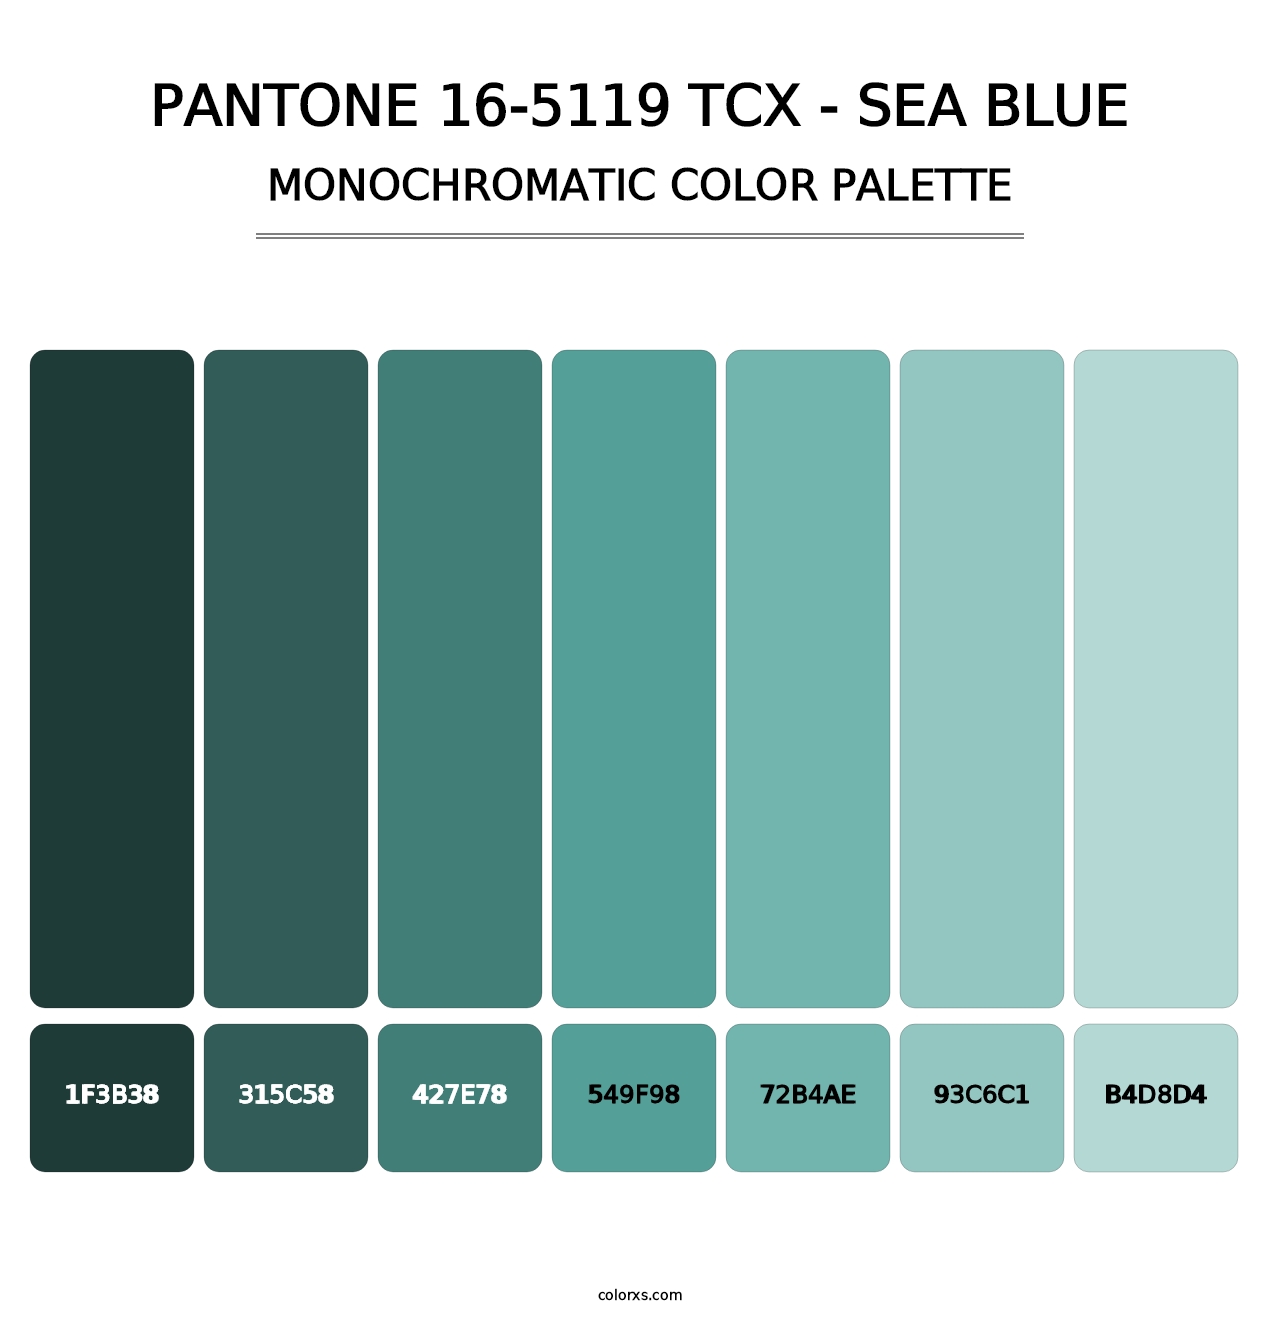 PANTONE 16-5119 TCX - Sea Blue - Monochromatic Color Palette